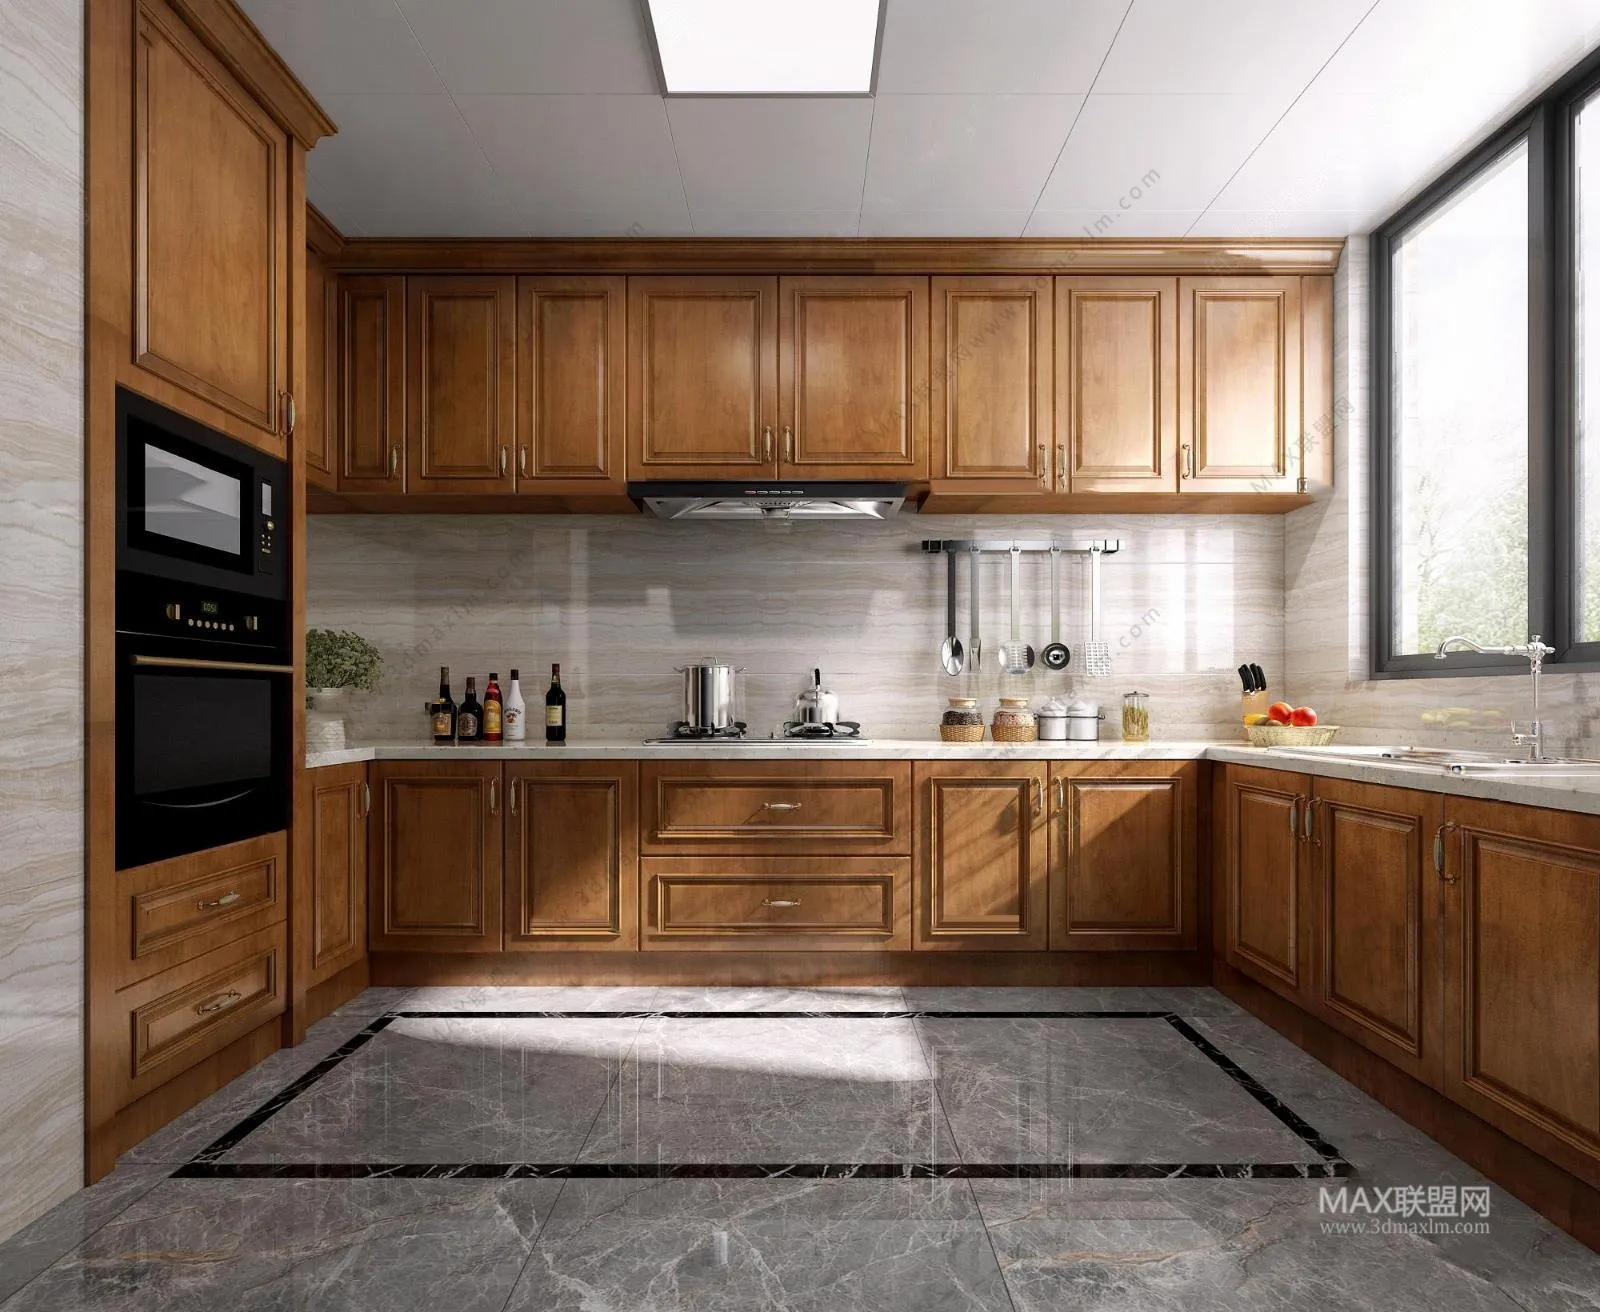 Kitchen – Interior Design – American Design – 004